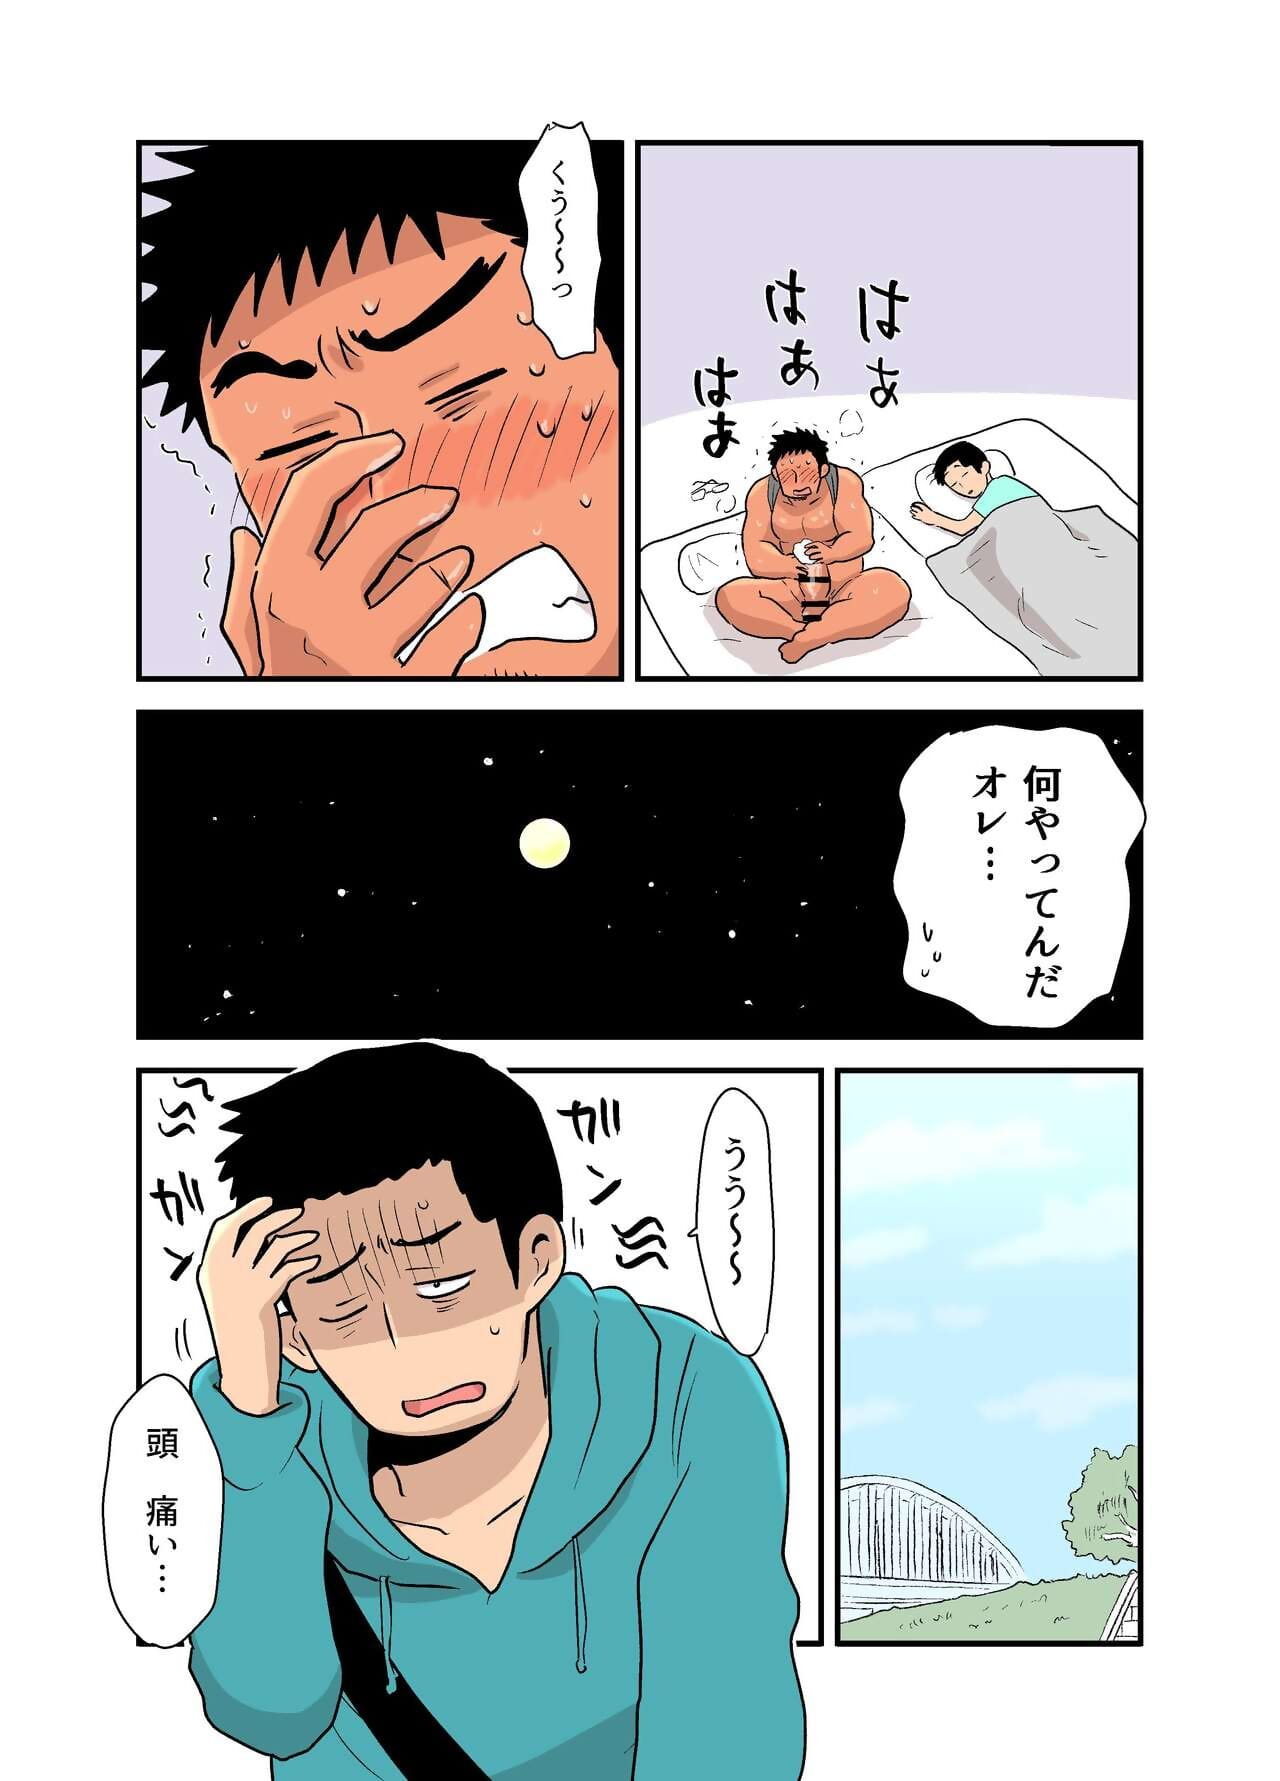 yotta hyoushi ni issen O koe sase rarete shimatta otaku macho no hanashi parte 2 page 1